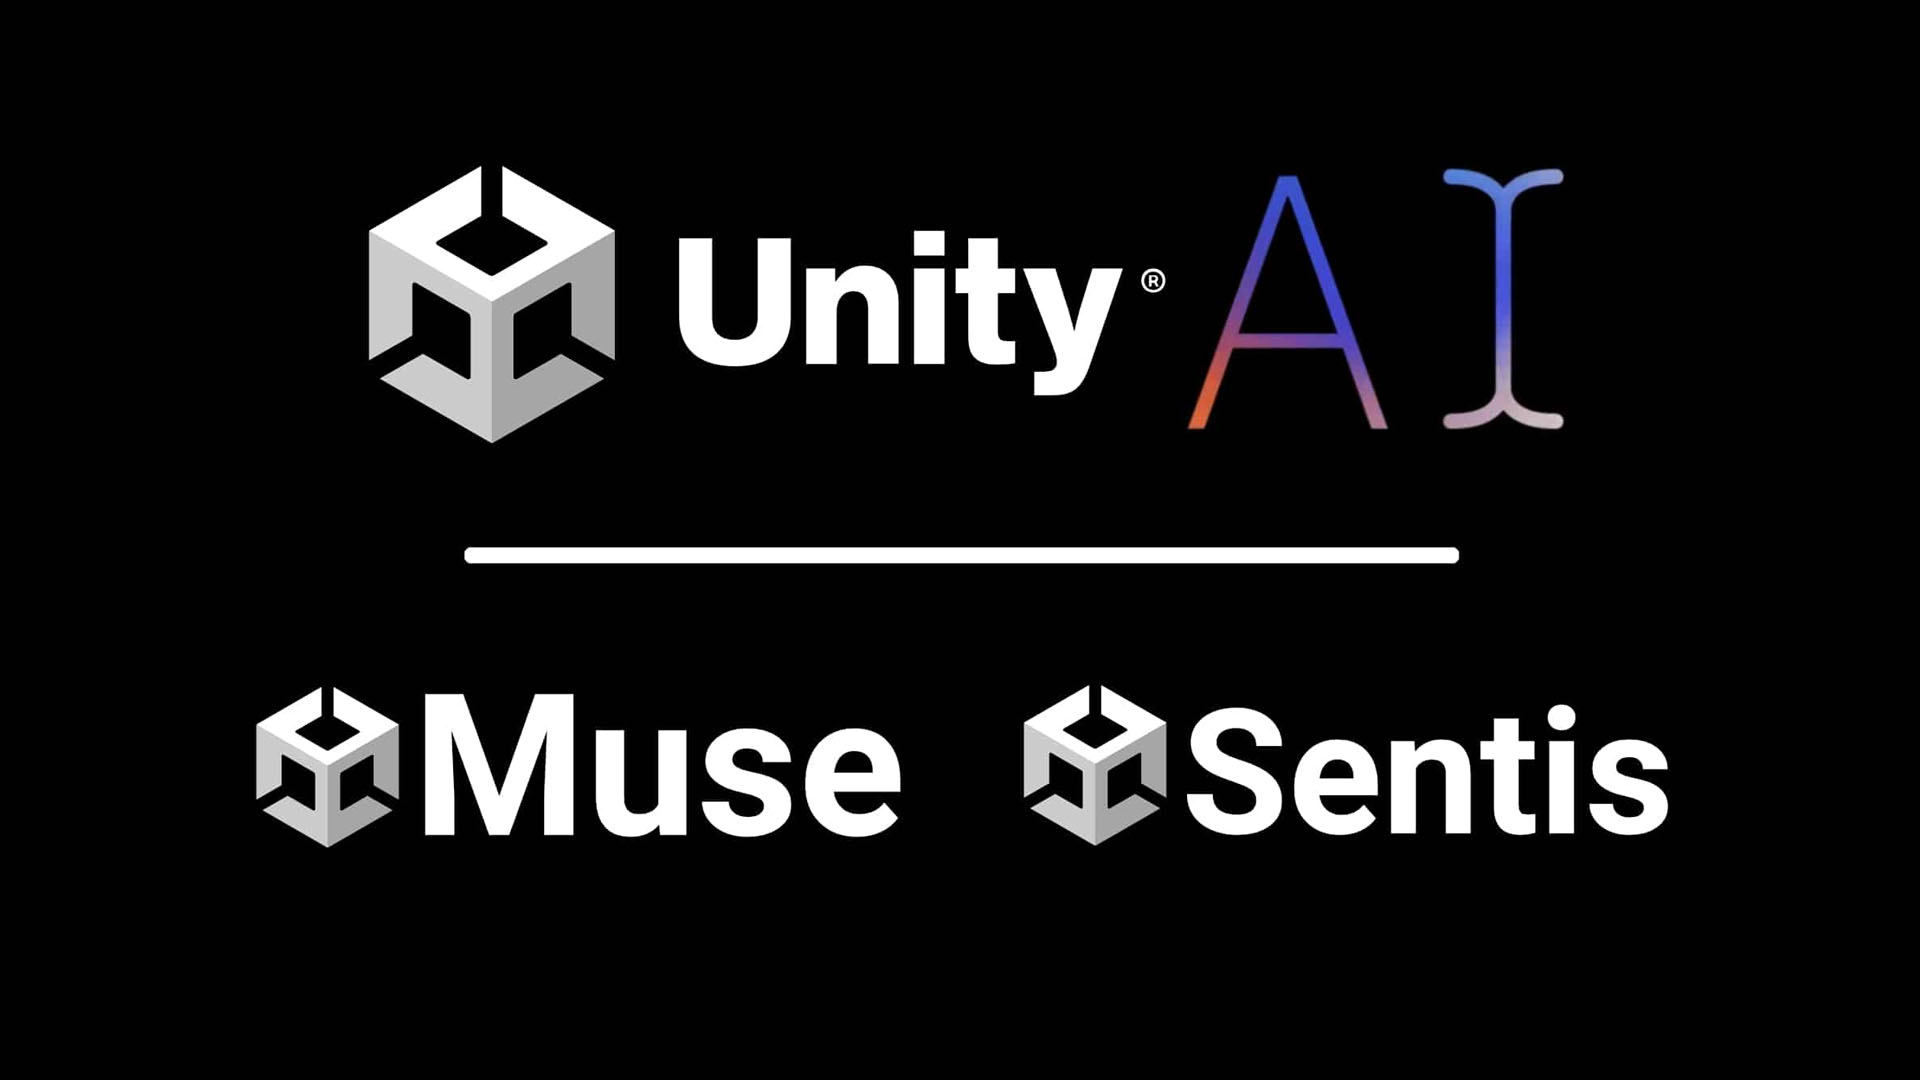 Unity AI